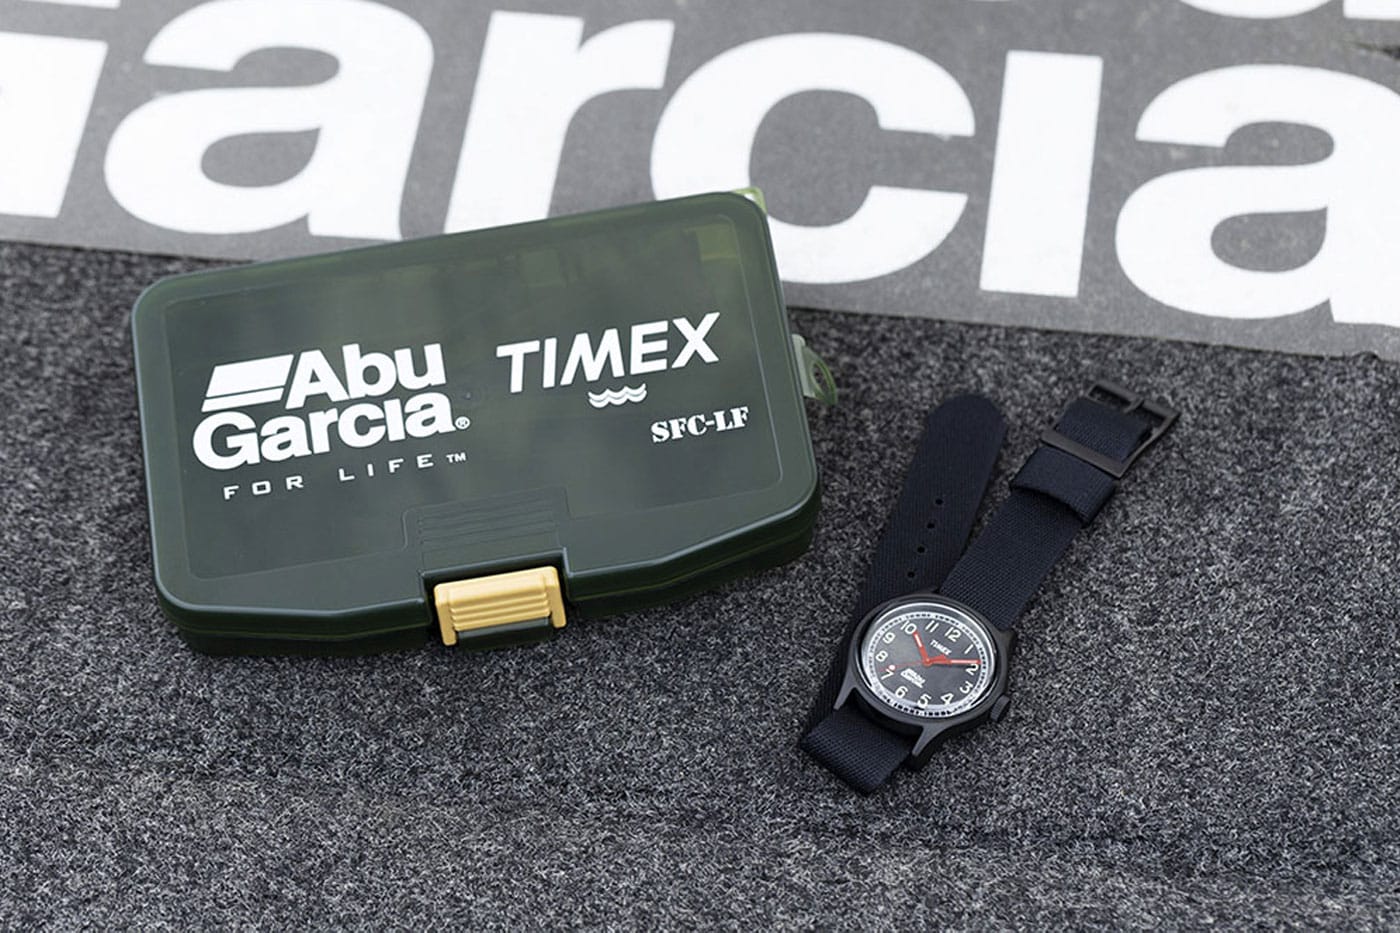 Abu Garcia x Timex Watch Release | Hypebeast